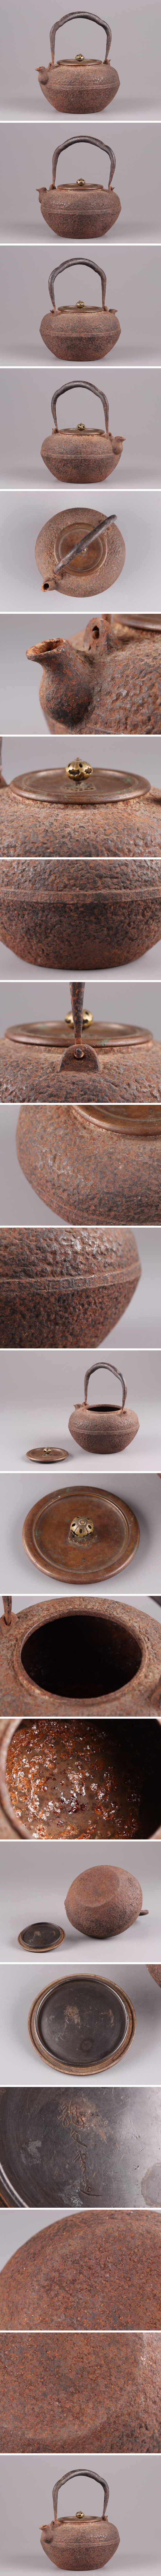 得価安い煎茶道具 龍文堂造 時代鉄瓶 銅製蓋 時代物 極上品 初だし品 3746 鉄瓶